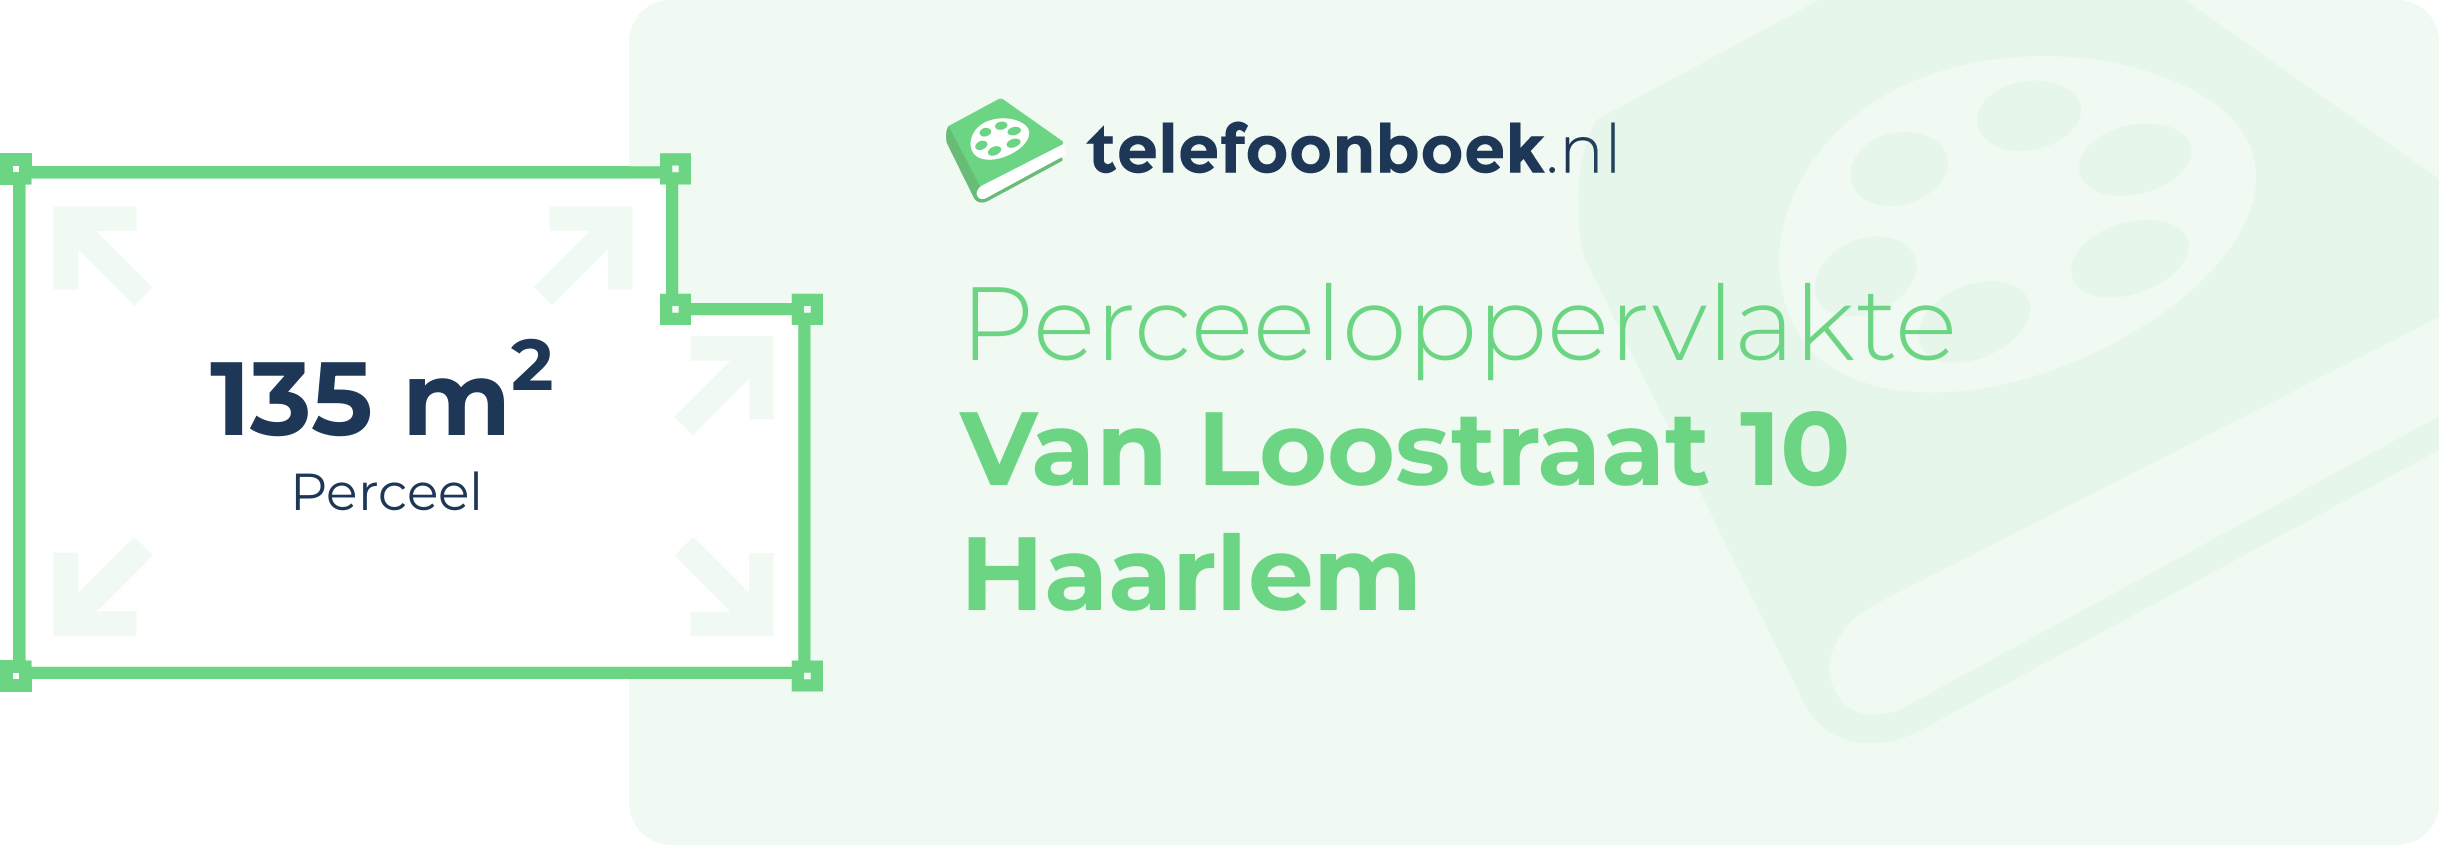 Perceeloppervlakte Van Loostraat 10 Haarlem